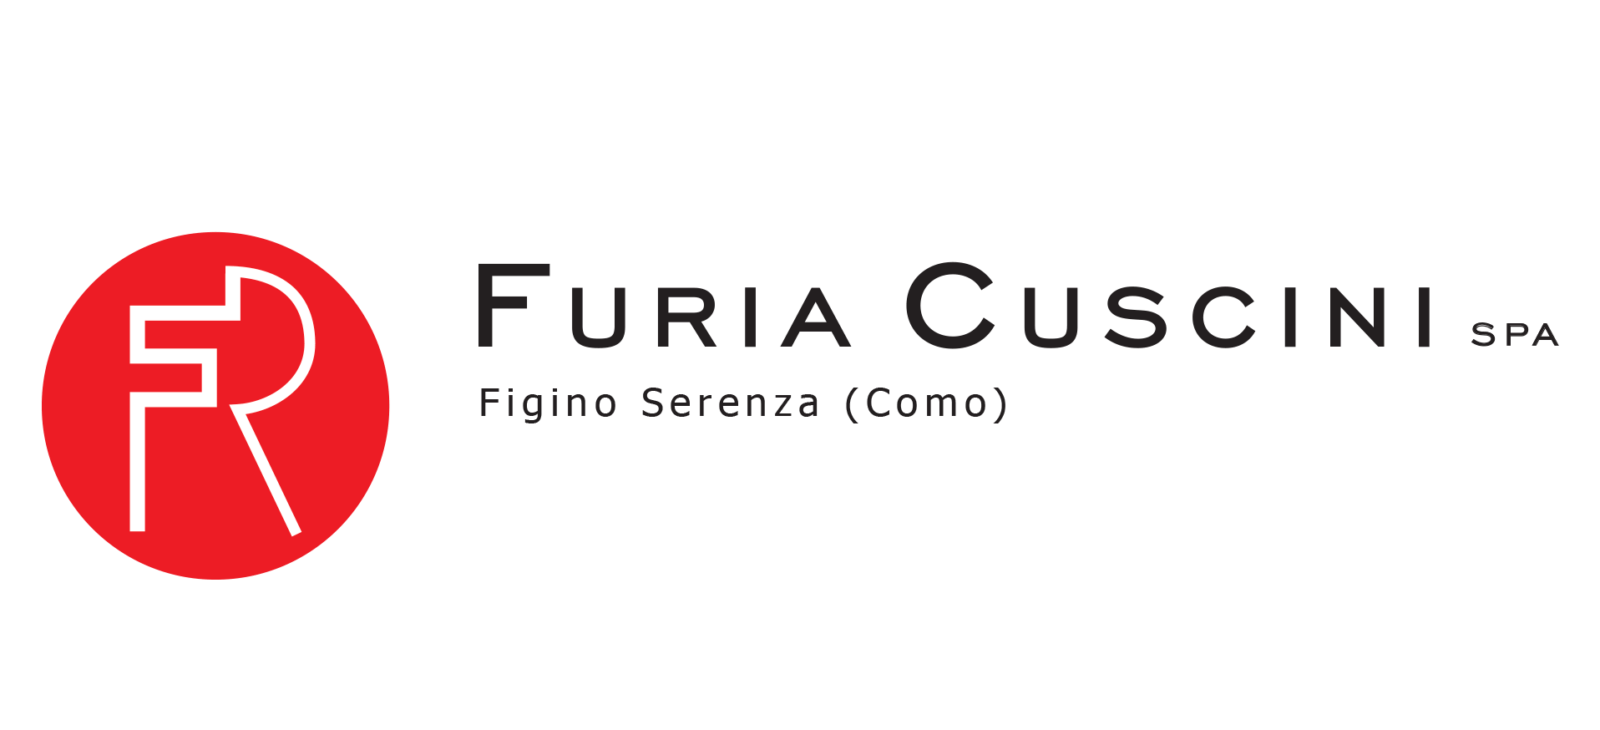 Figino_sponsot_furia